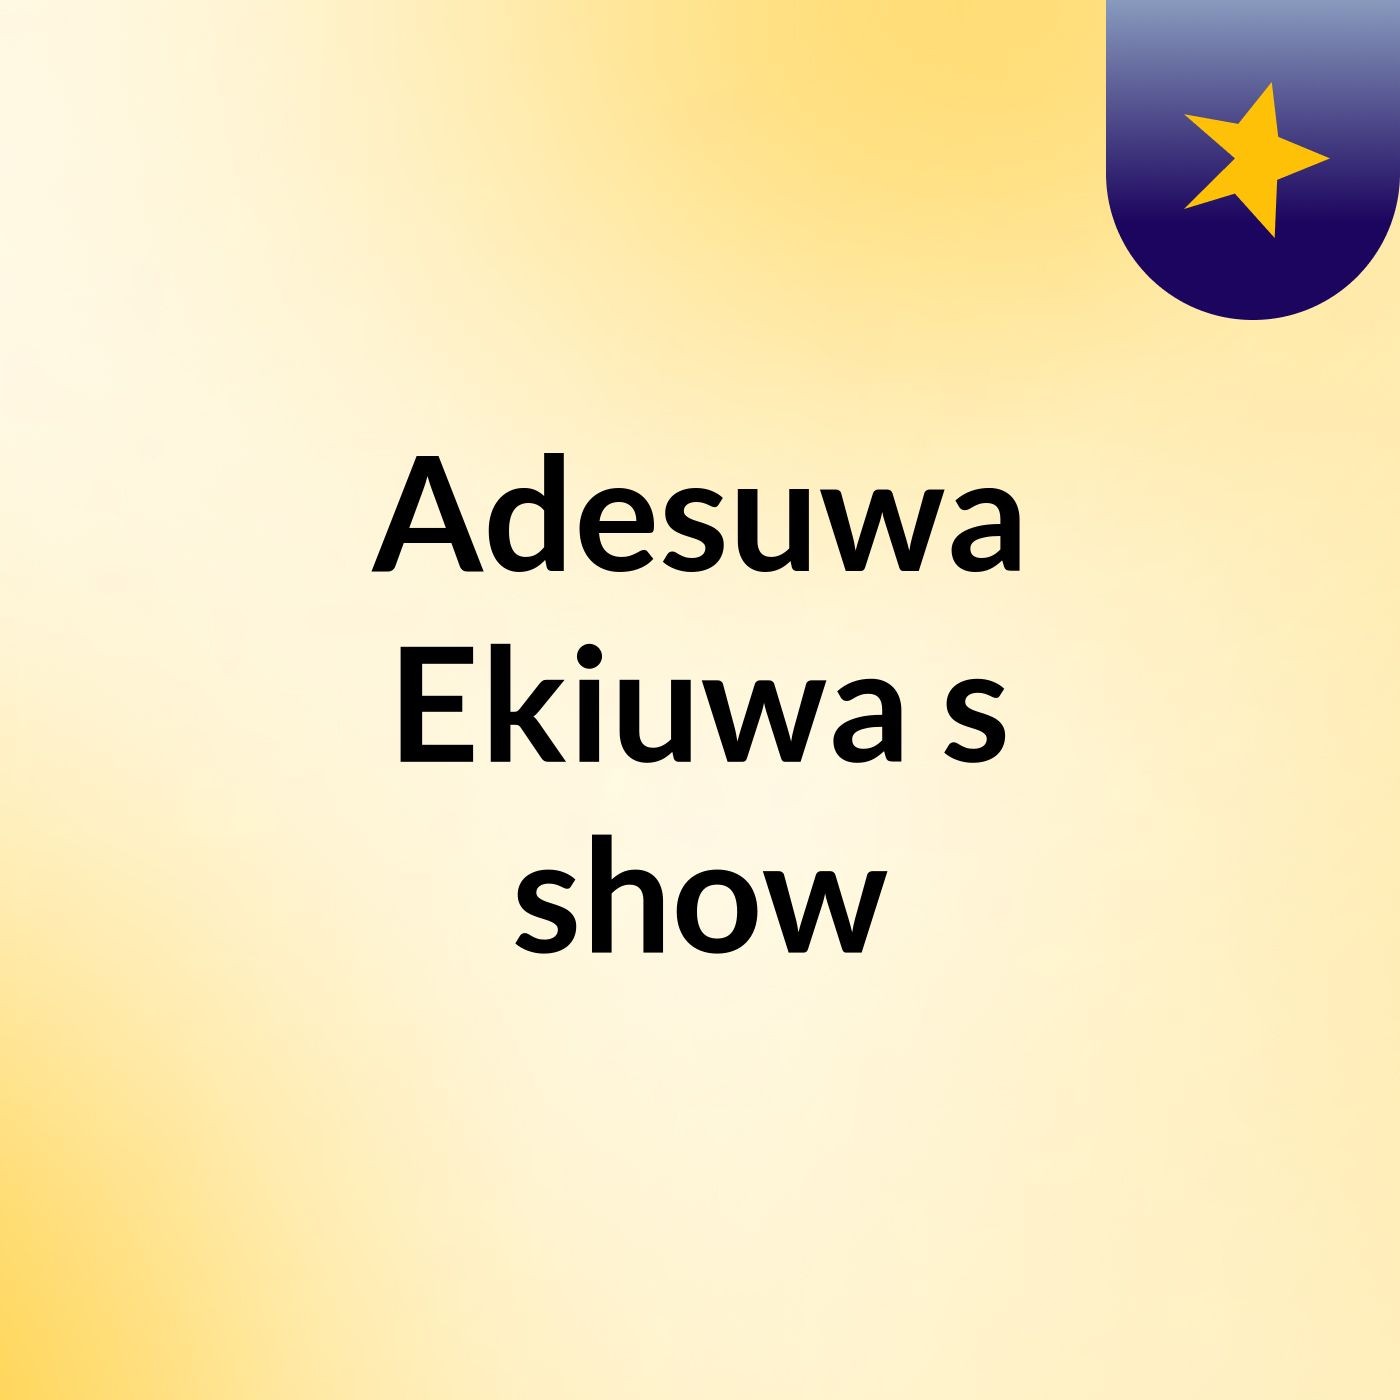 Adesuwa Ekiuwa's show